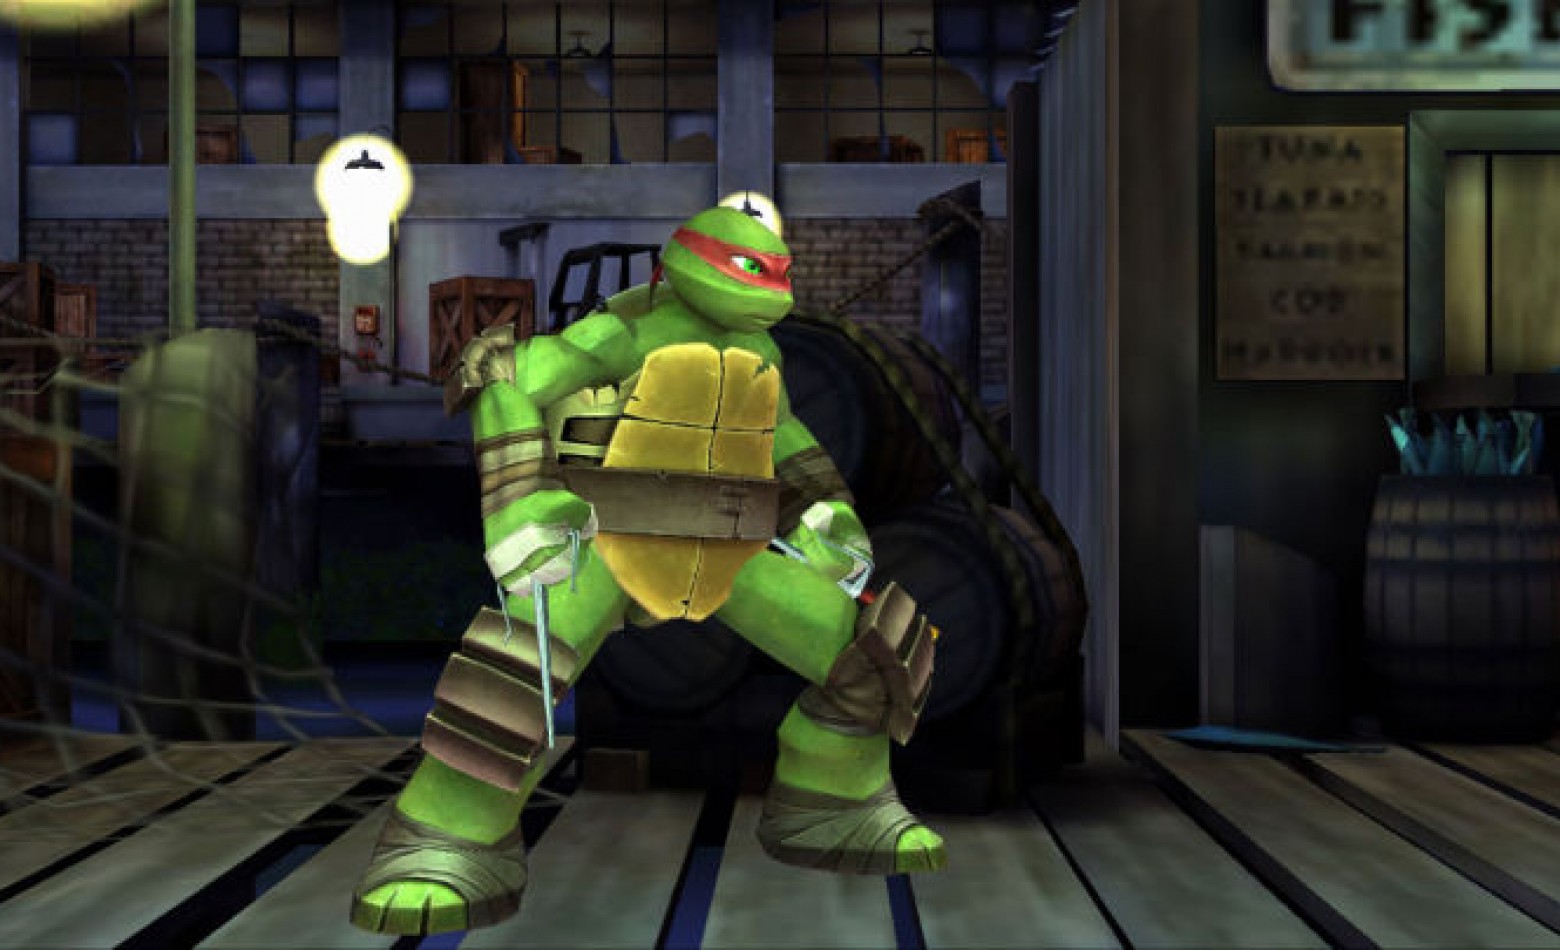 Activision anuncia novo game das Tartarugas Ninja para PS3, Xbox 360 e 3DS